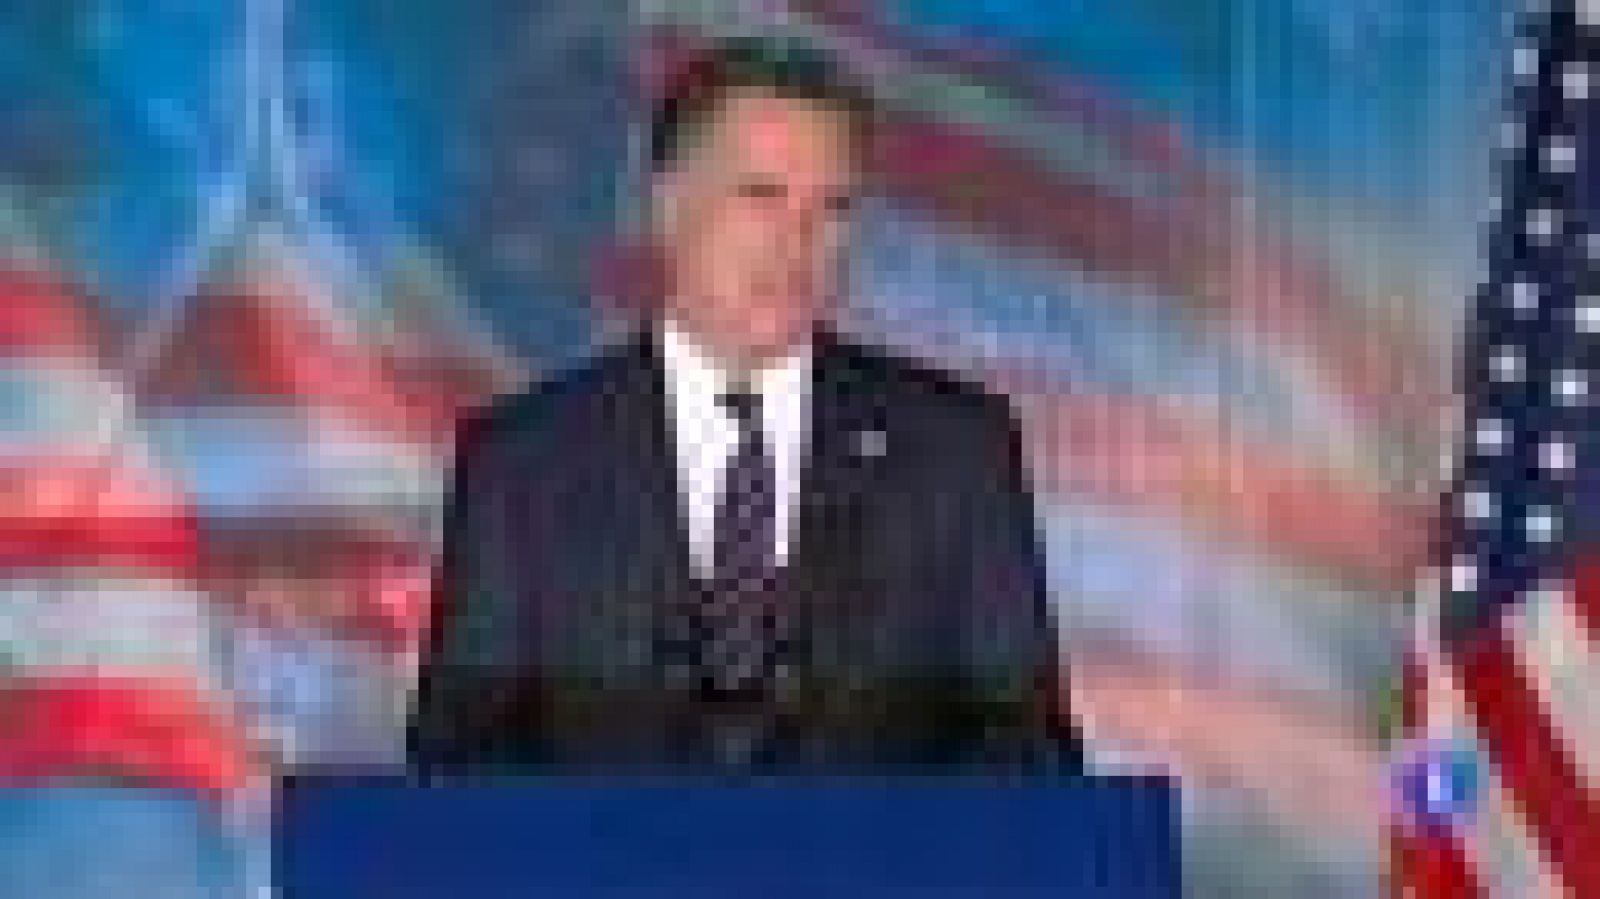 Mitt Romney "Me habría encantado llevaros por ese camino" 